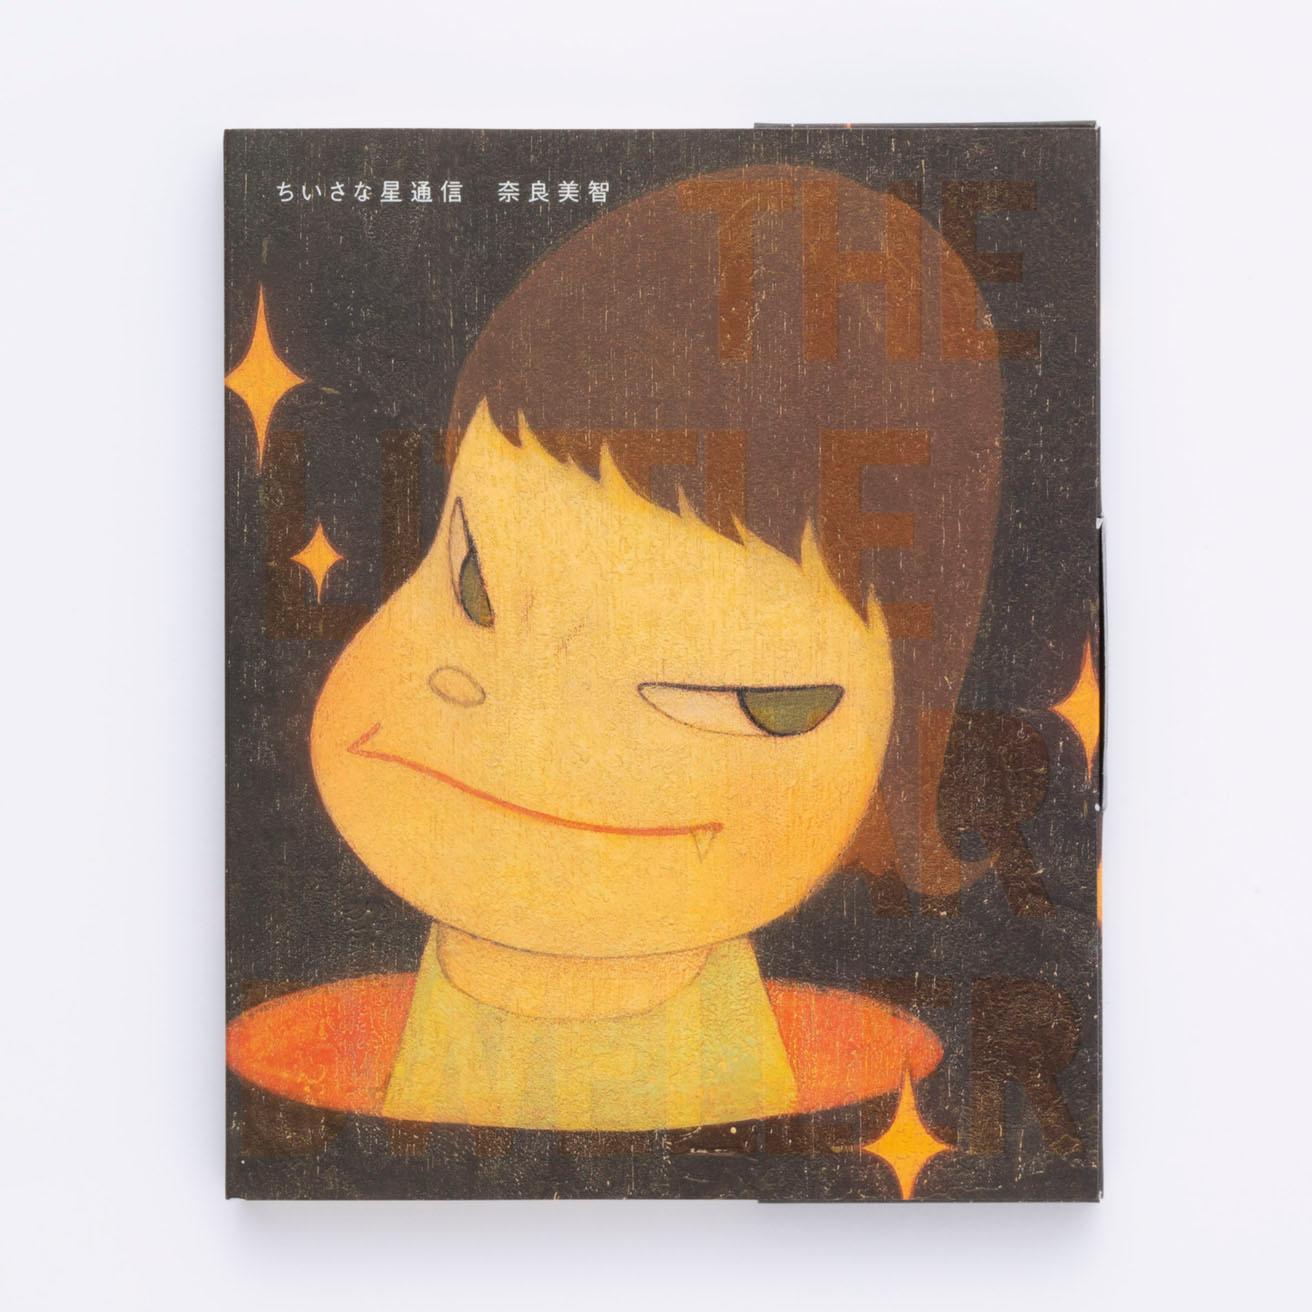 絵をみること、本を読むことの贈りもの。奈良美智の本｜鈴木芳雄の「本と展覧会」